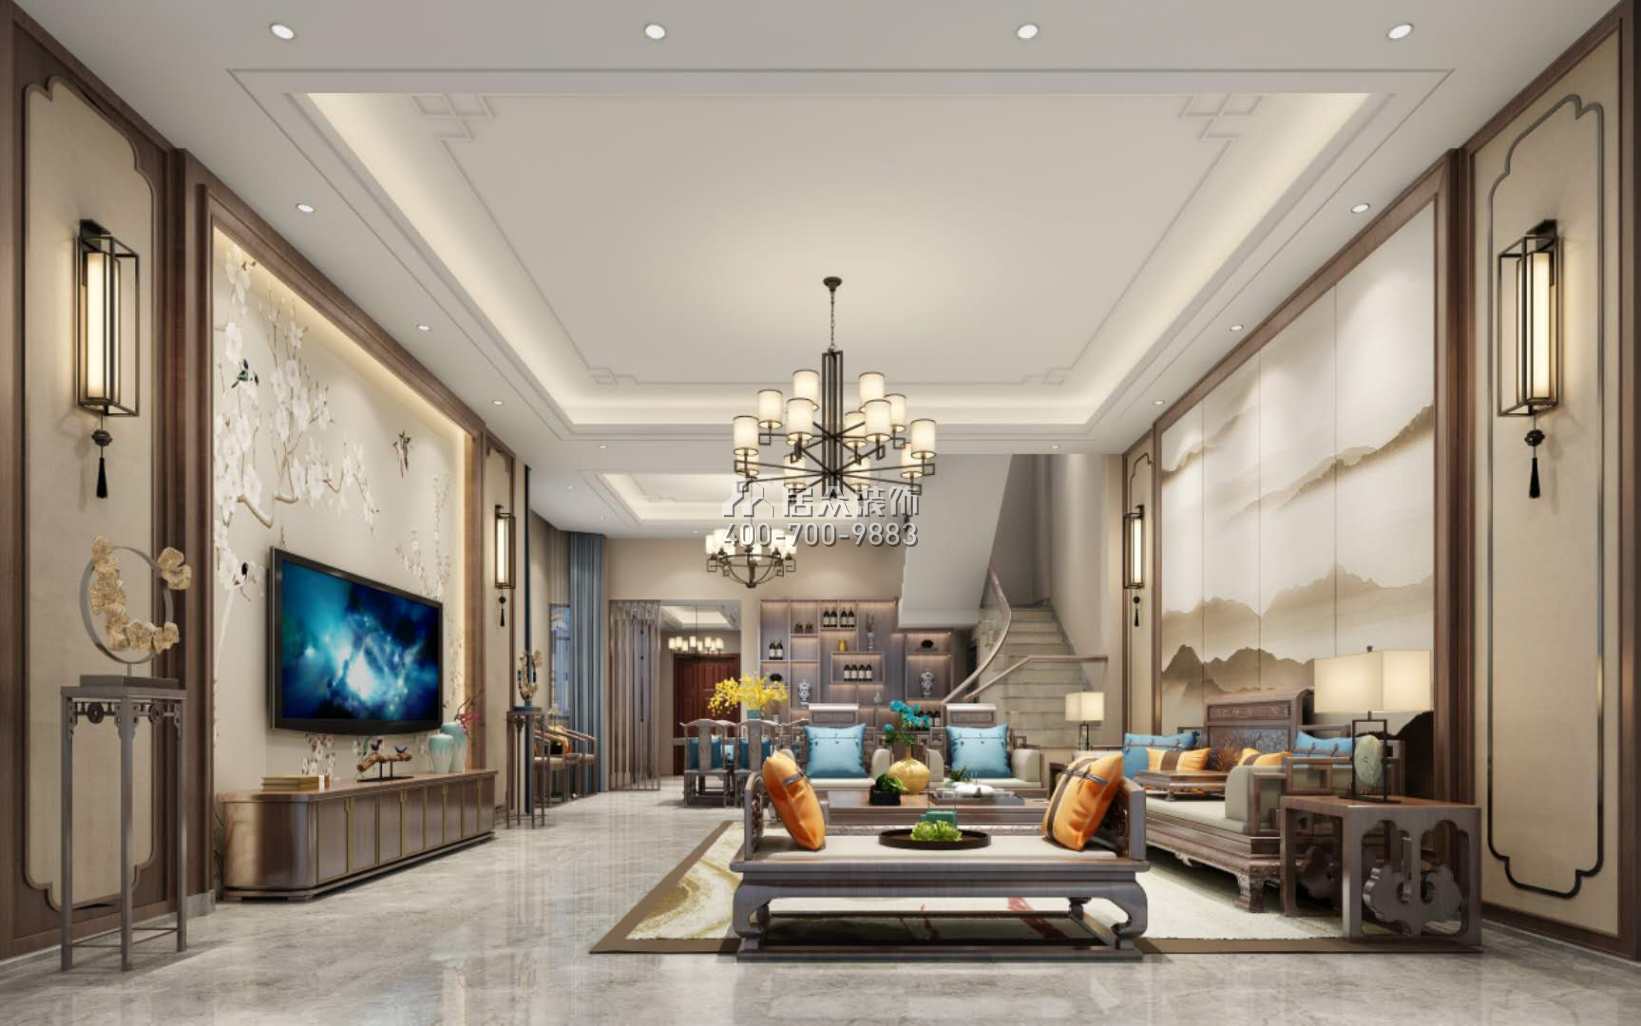 海逸豪庭尚都280平方米中式風格別墅戶型客廳裝修效果圖